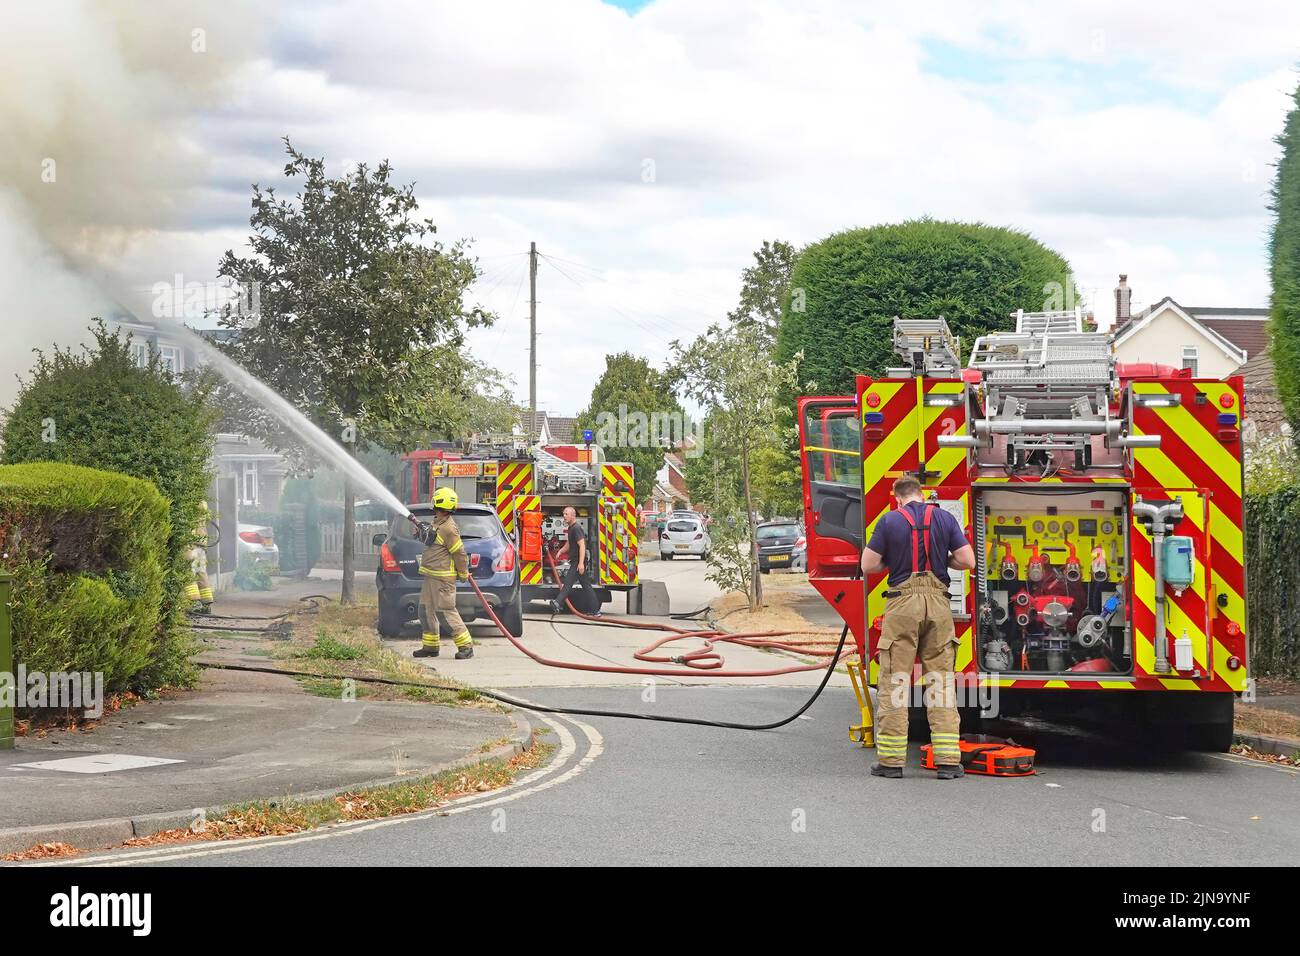 Bomberos rociando chorro de agua en casa dos bomberos y bomberos Essex Servicio de Bomberos y Rescate en la calle residencial escena Inglaterra Reino Unido Foto de stock